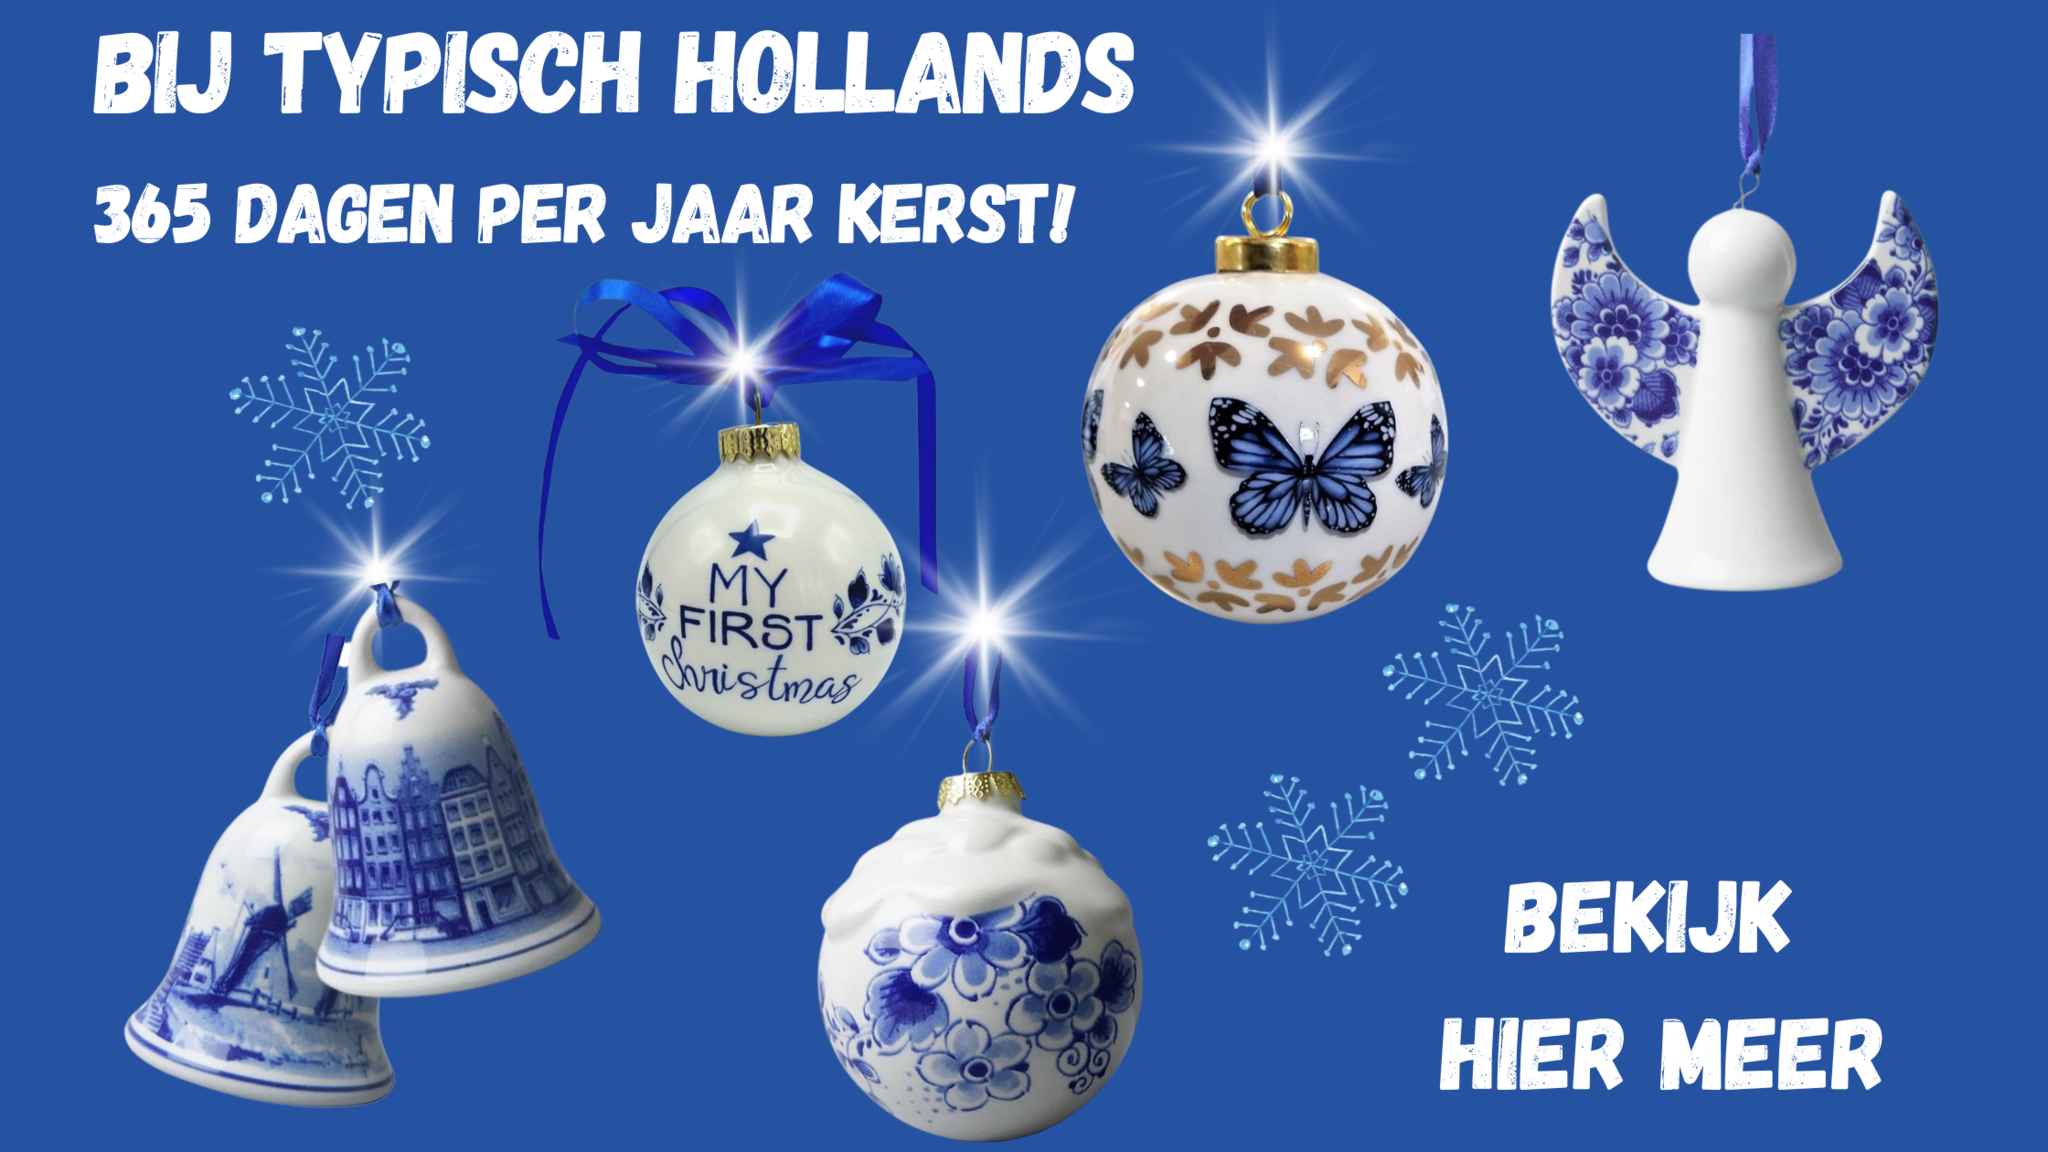 365 dagen per jaar kerst bij Typisch Hollands